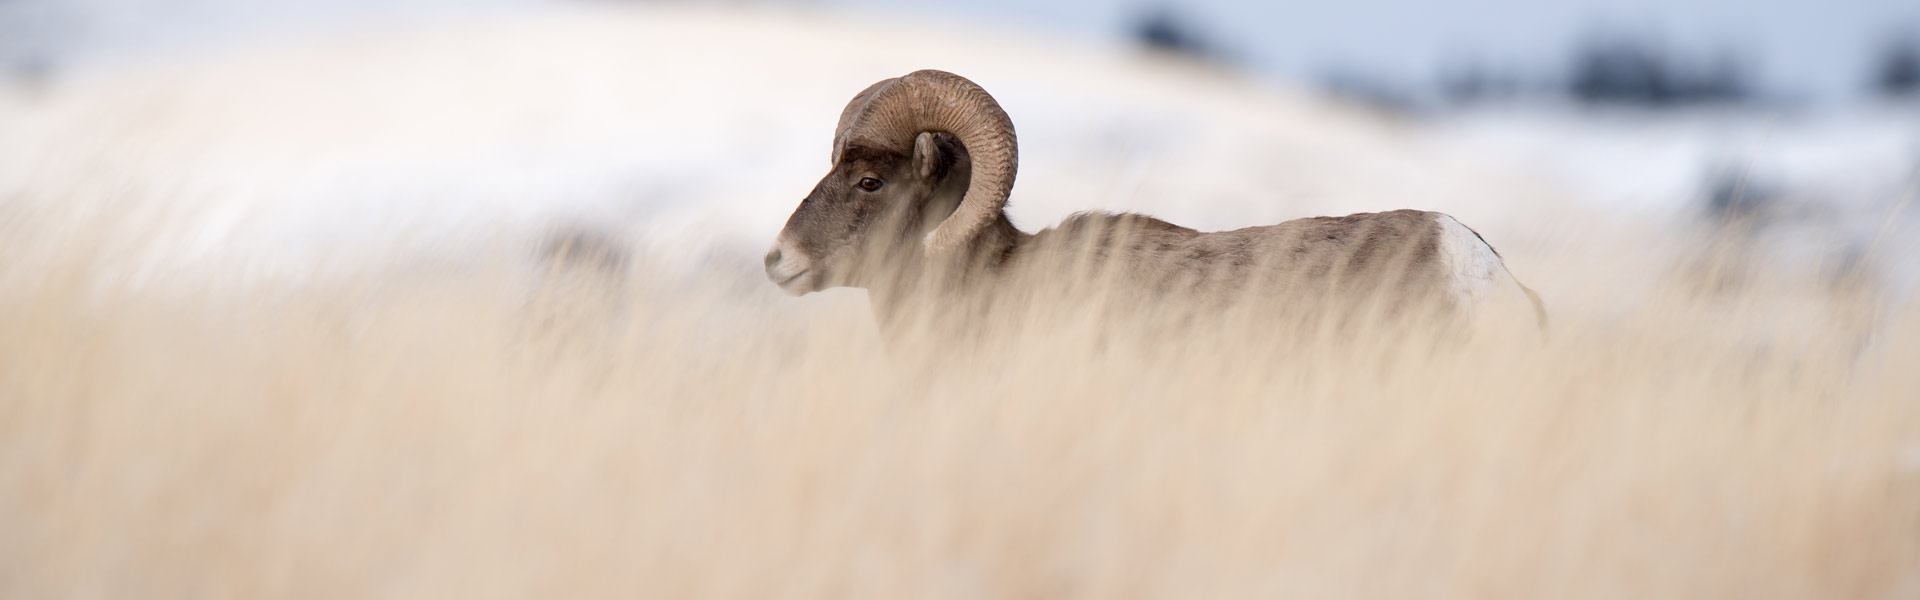 Bighorn Sheep